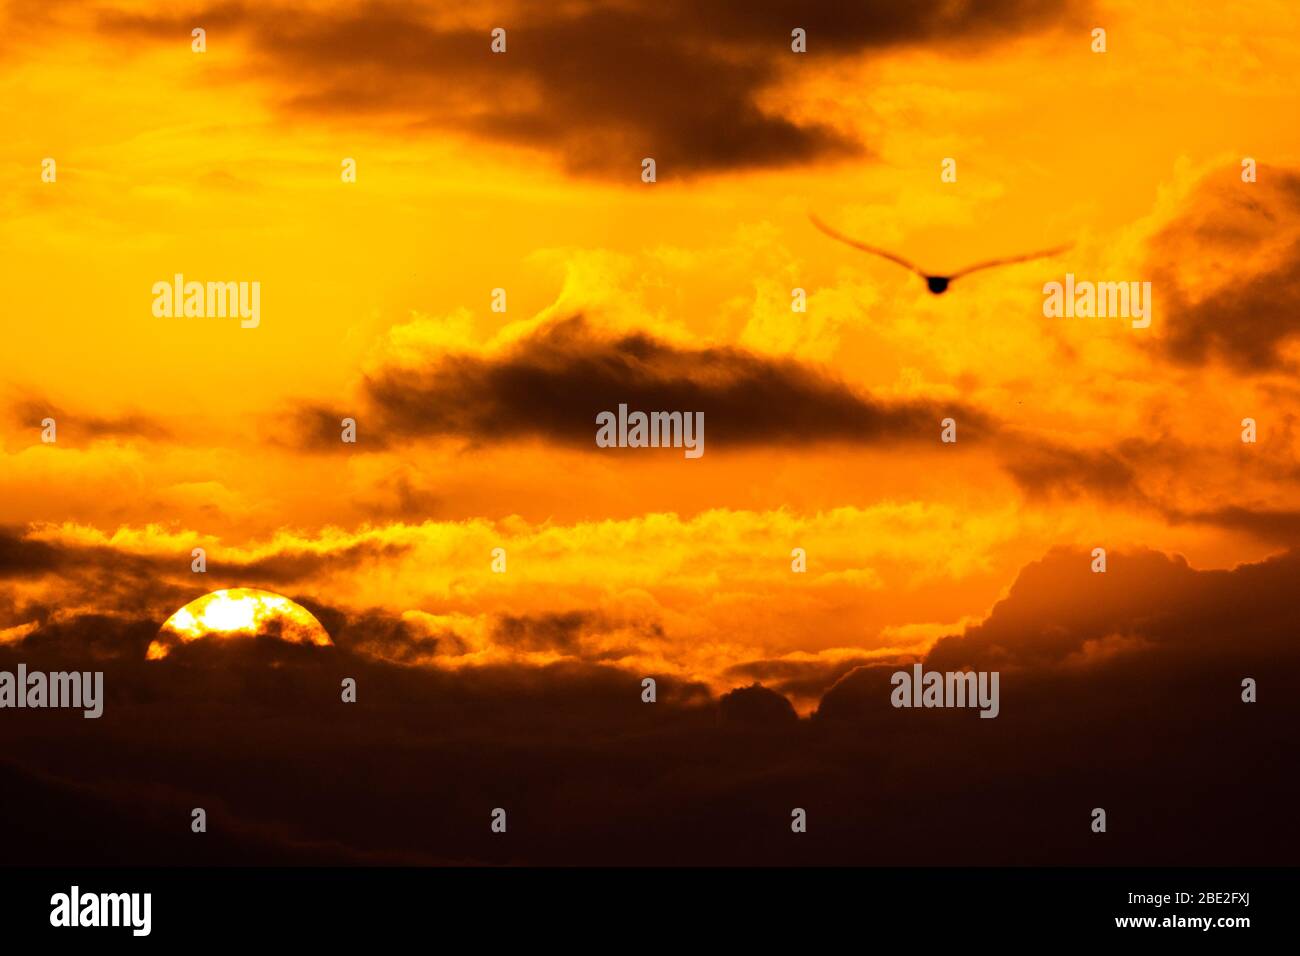 Möwe fliegt in einem wunderschönen Sonnenuntergang mit einer riesigen Sonne im Hintergrund. Schöner Sonnenuntergang mit orangefarbenen Wolken in der goldenen Stunde. Stockfoto